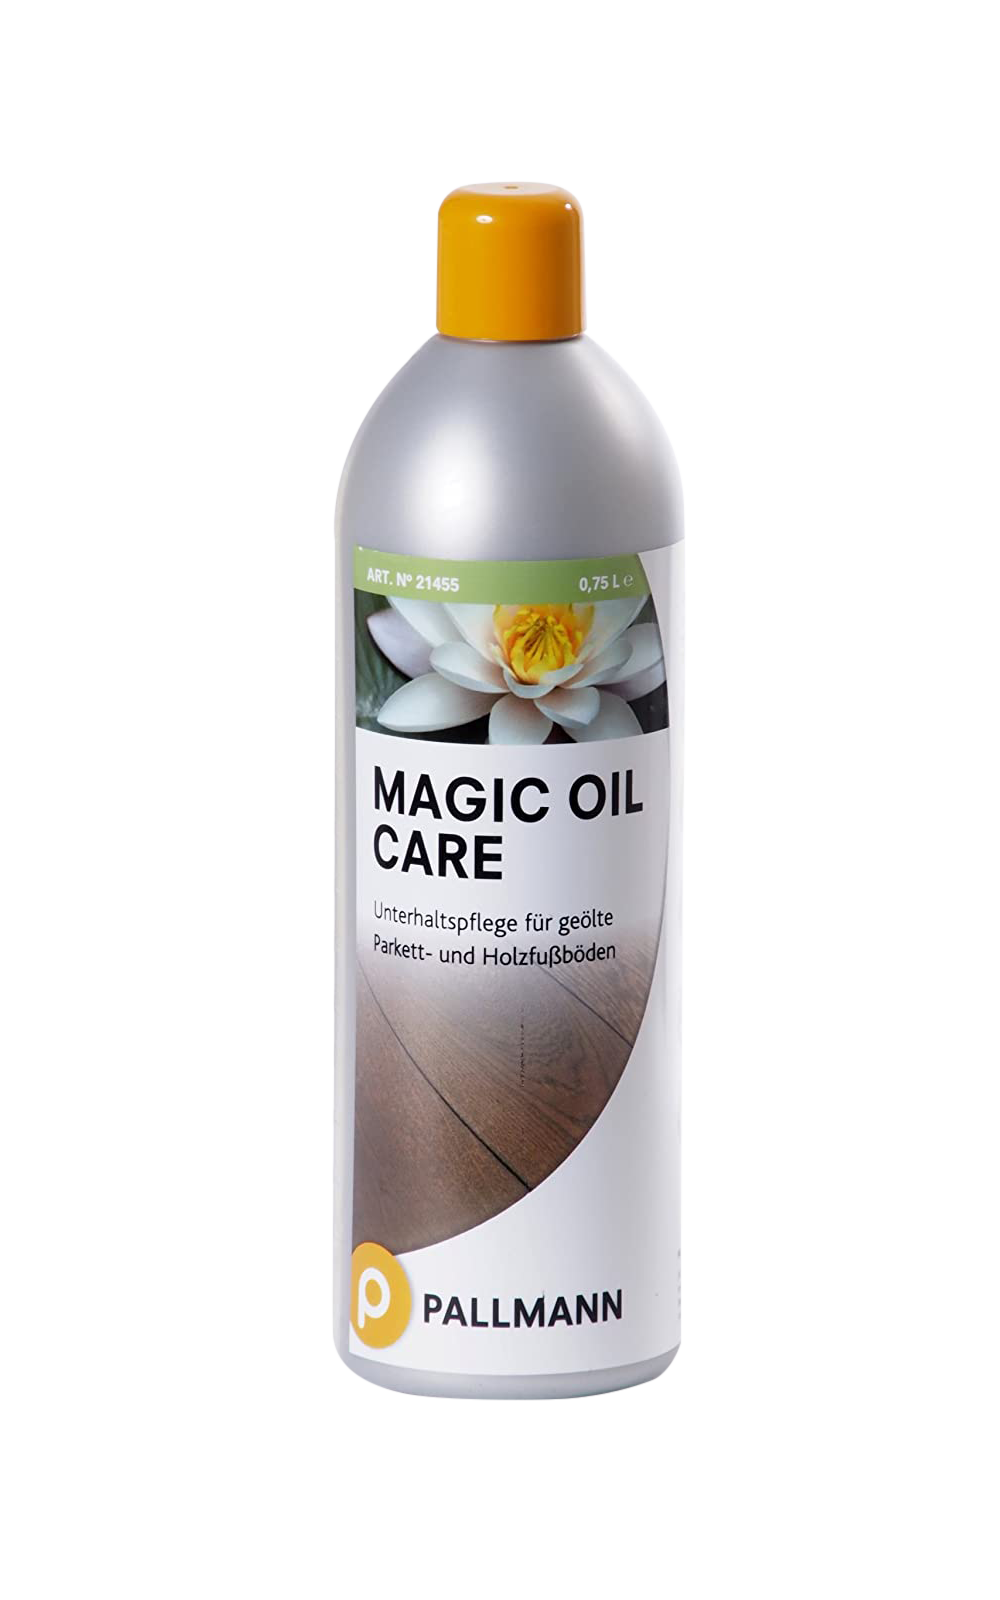 Pallman magic oil care